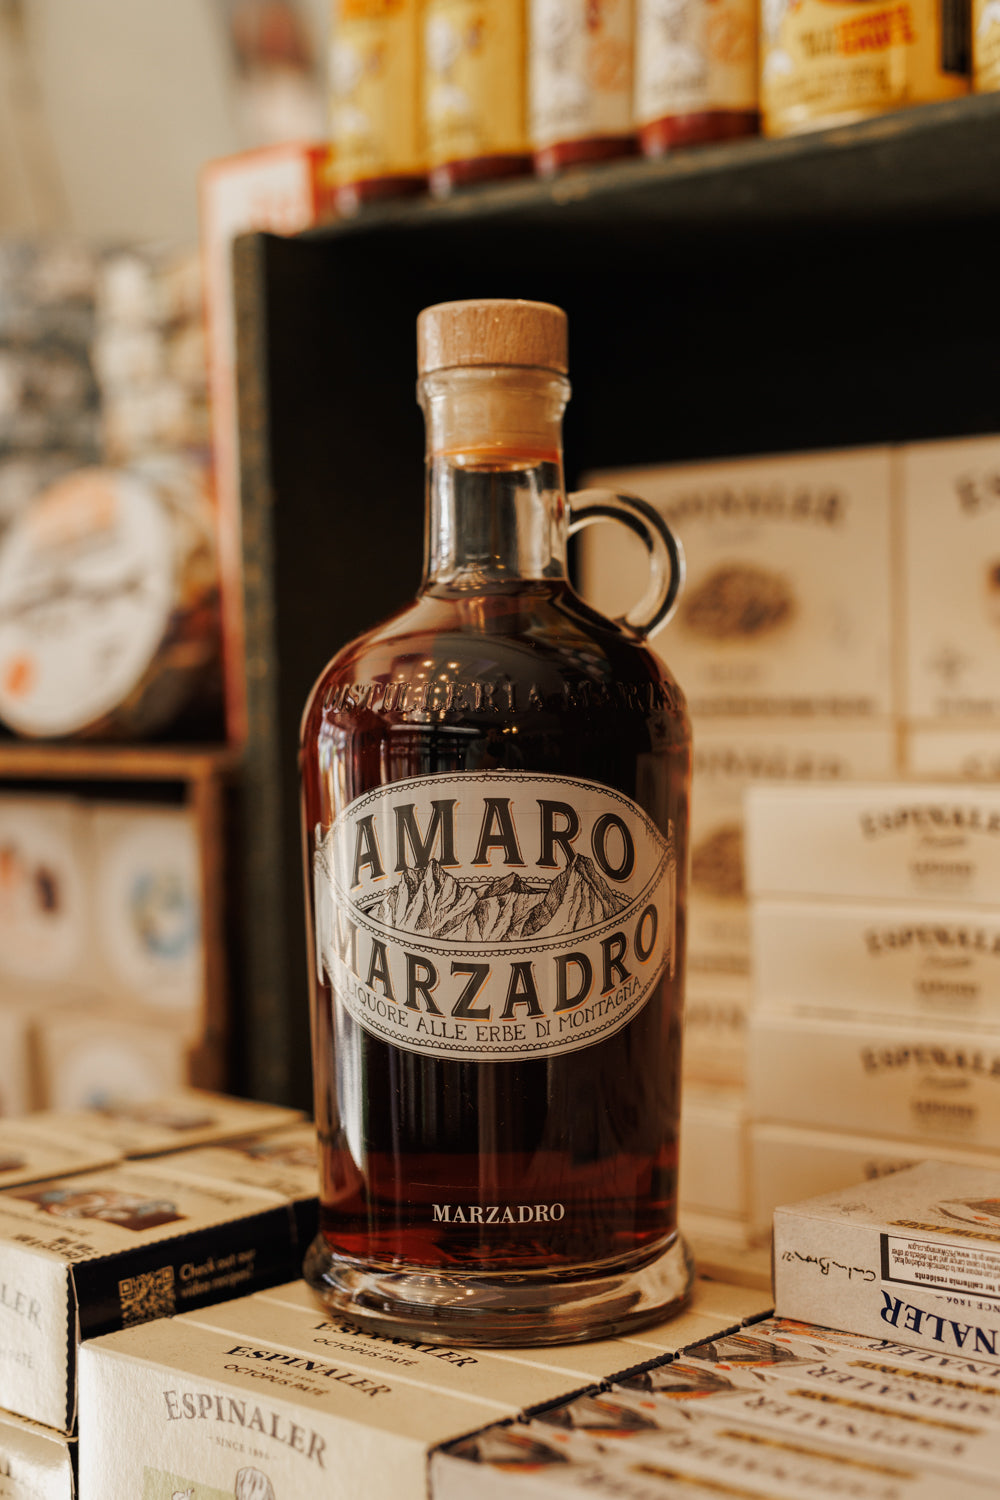 Amaro Marzadro